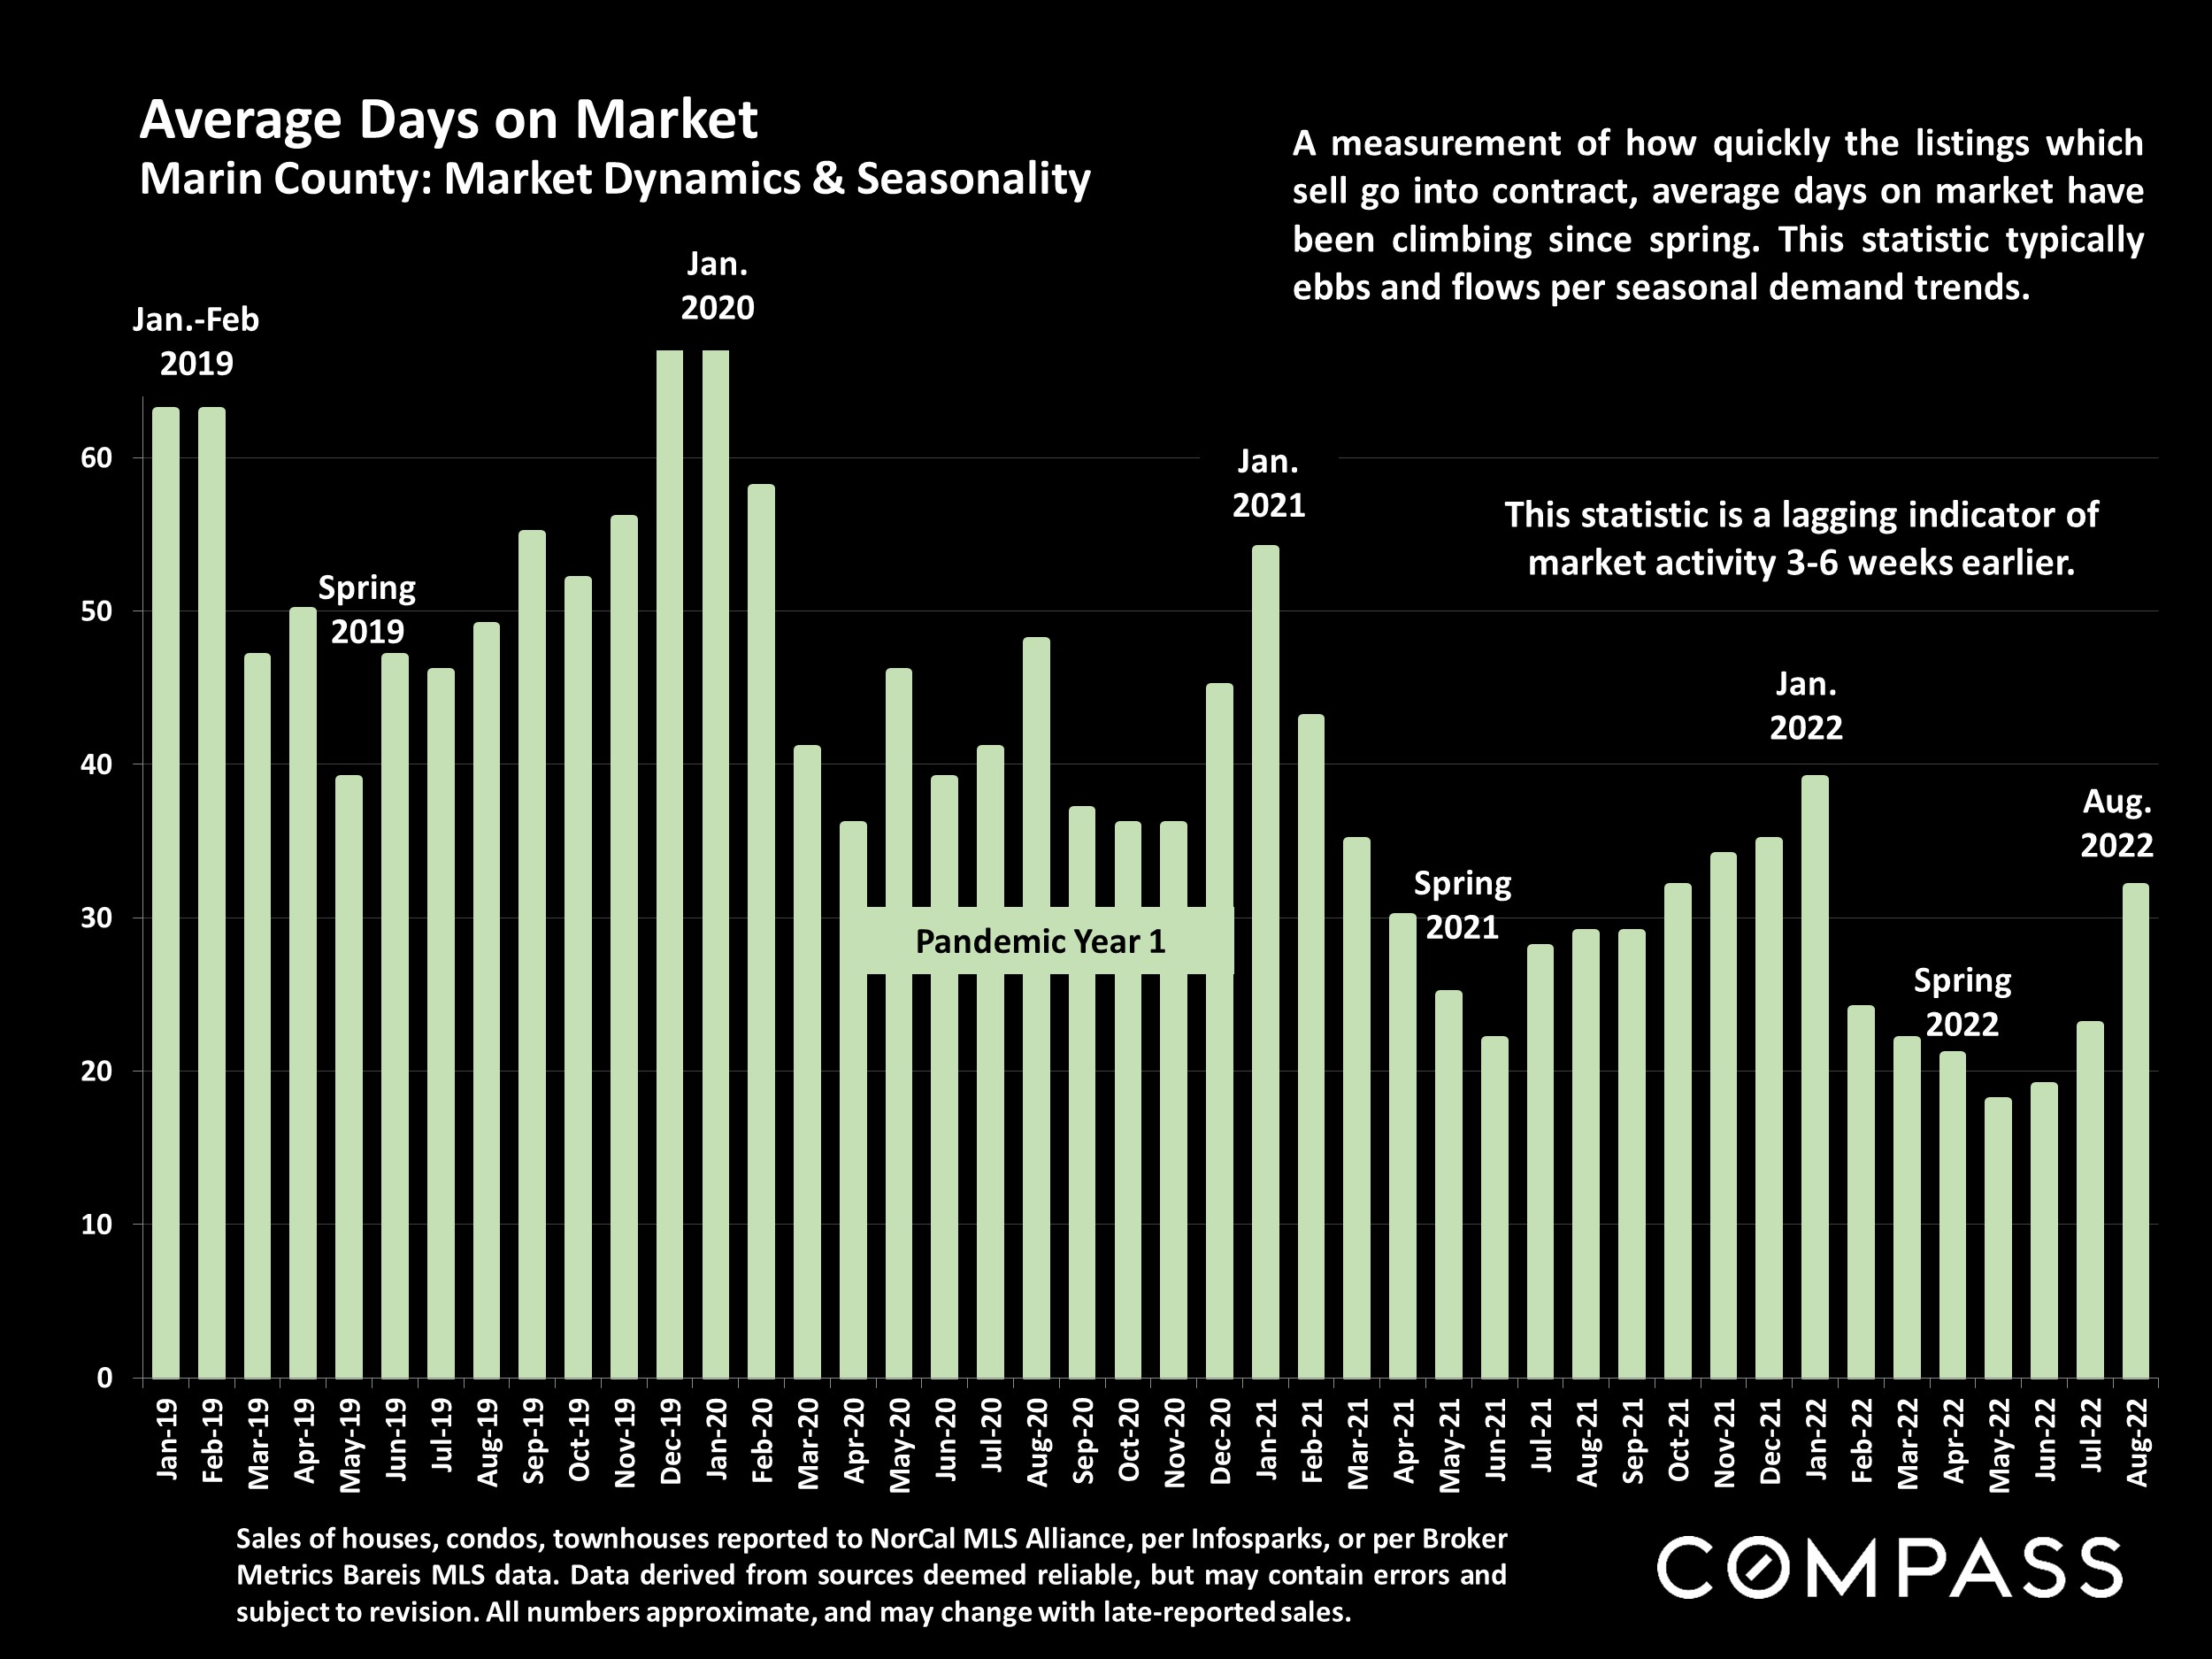 Average Days on Market